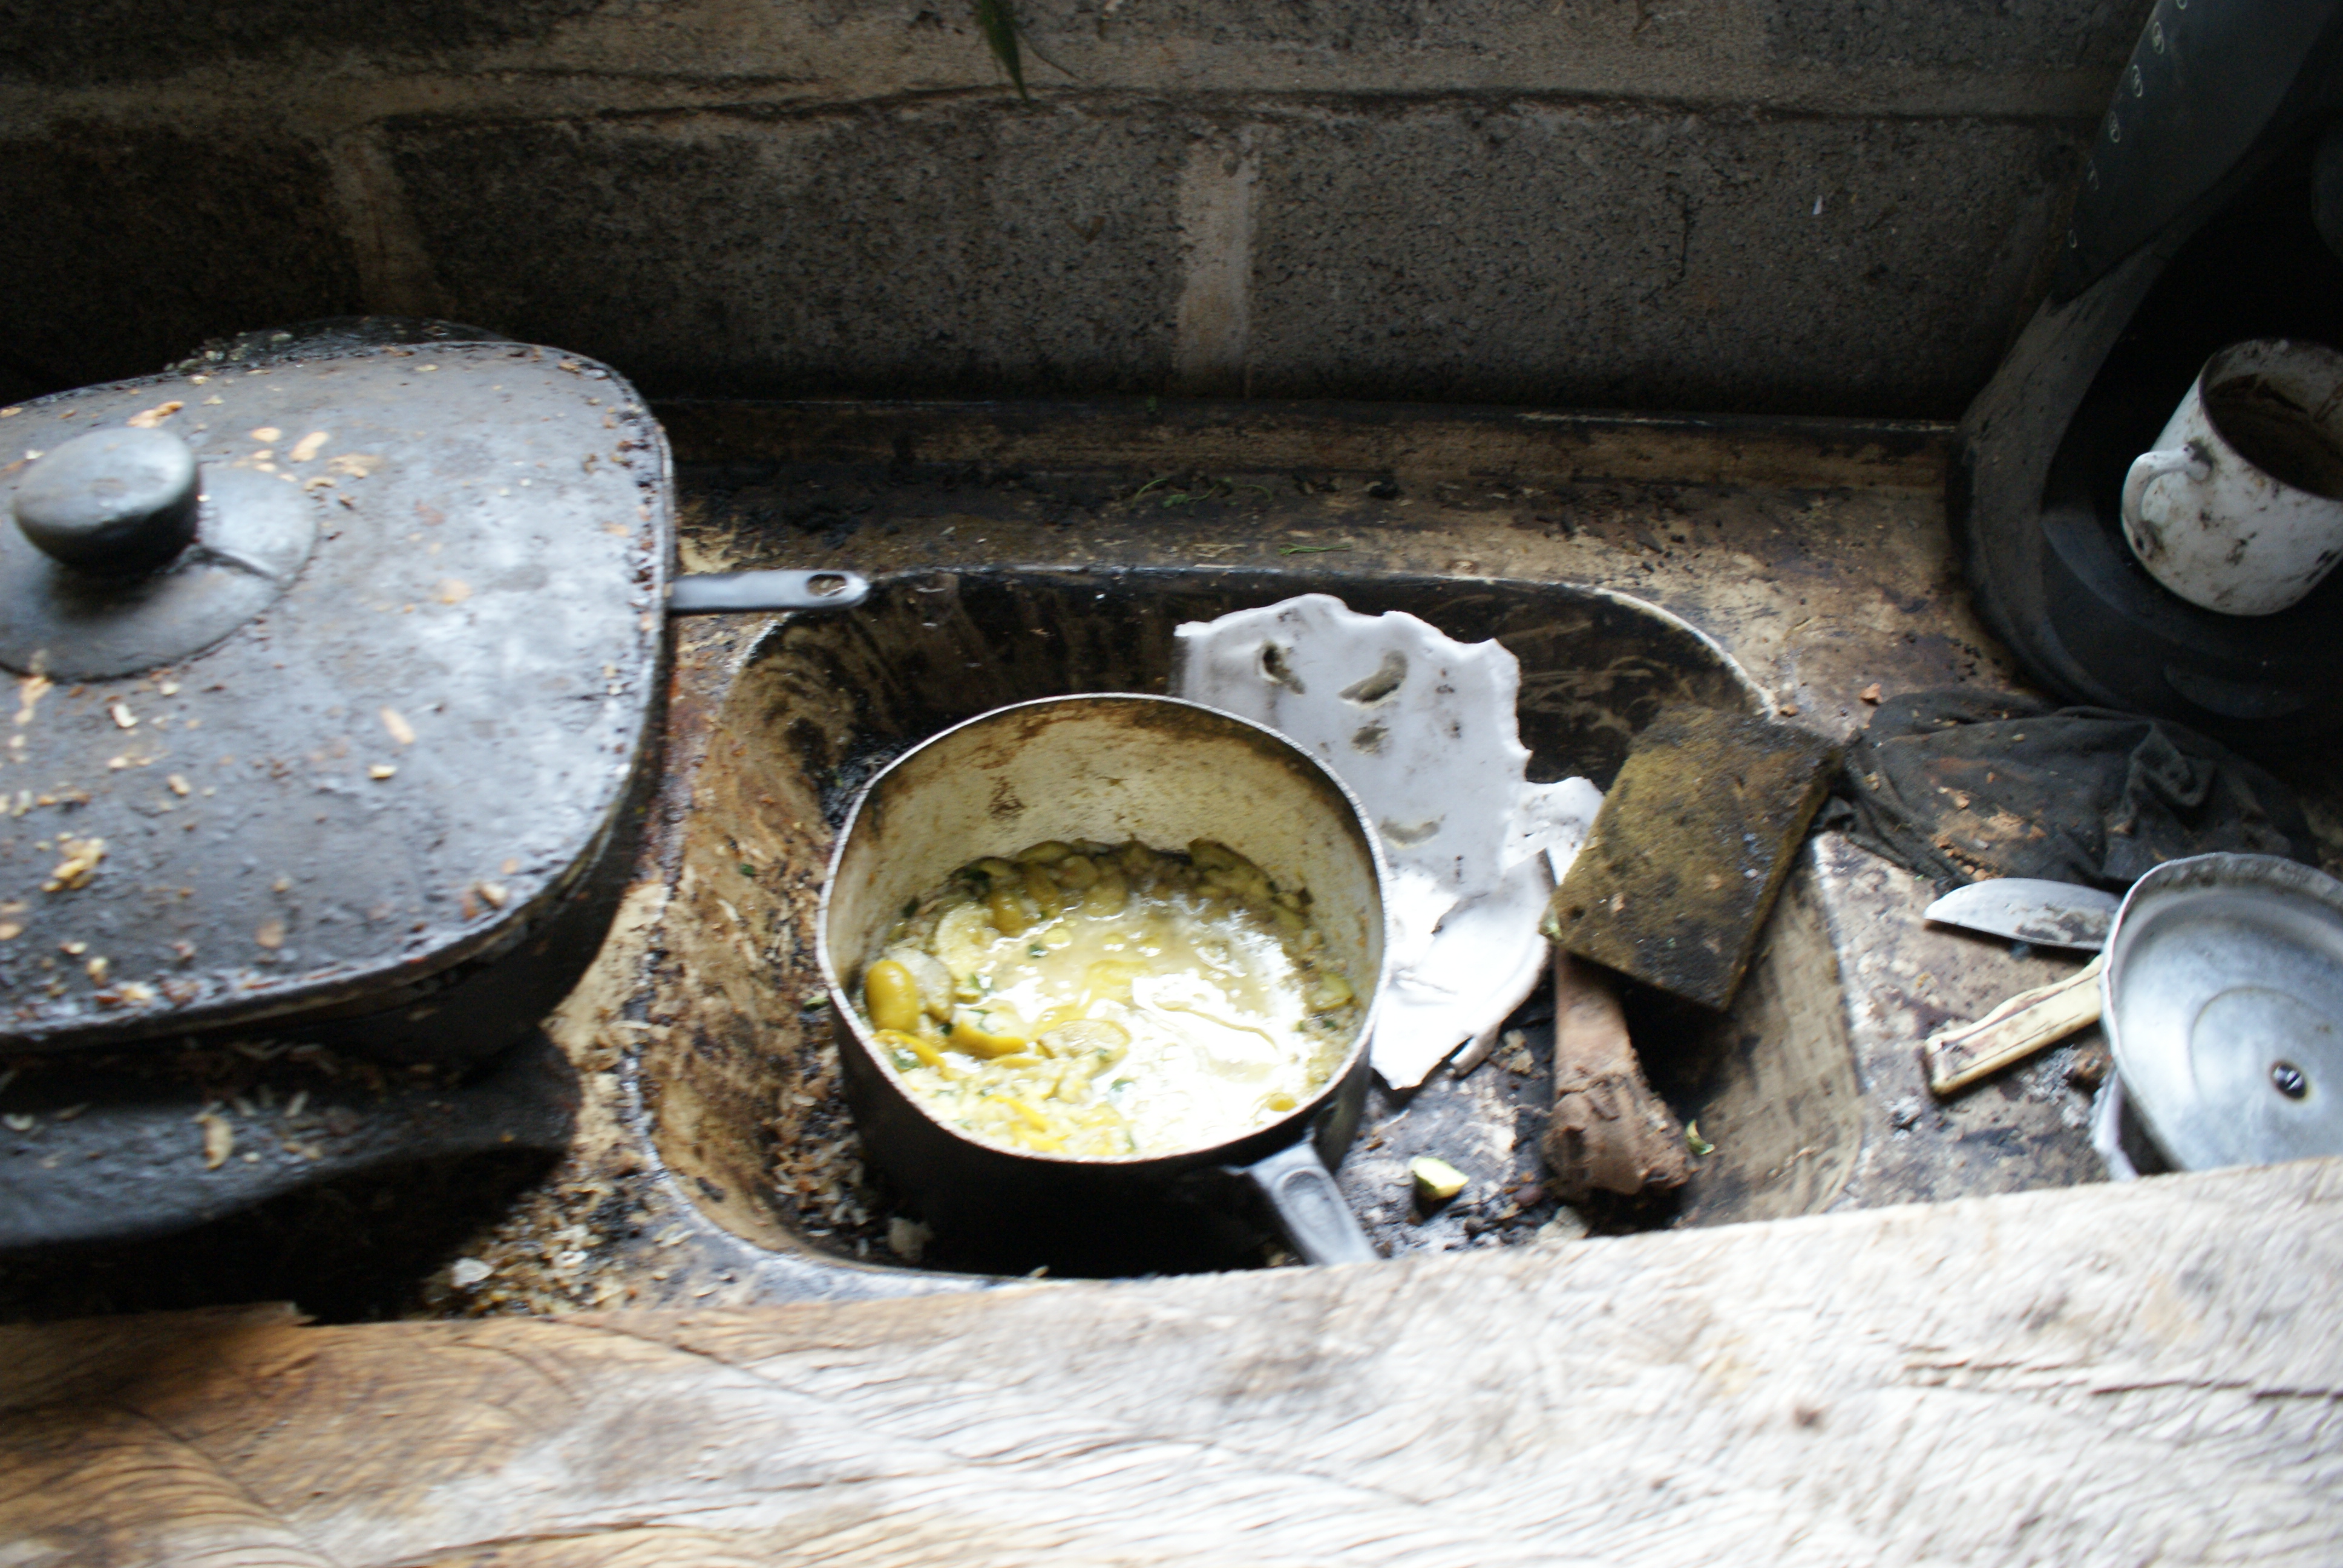 Restos de comida e pó de carvão acumulado na pia do alojamento de um dos resgatados contribuiu para a degradância do local